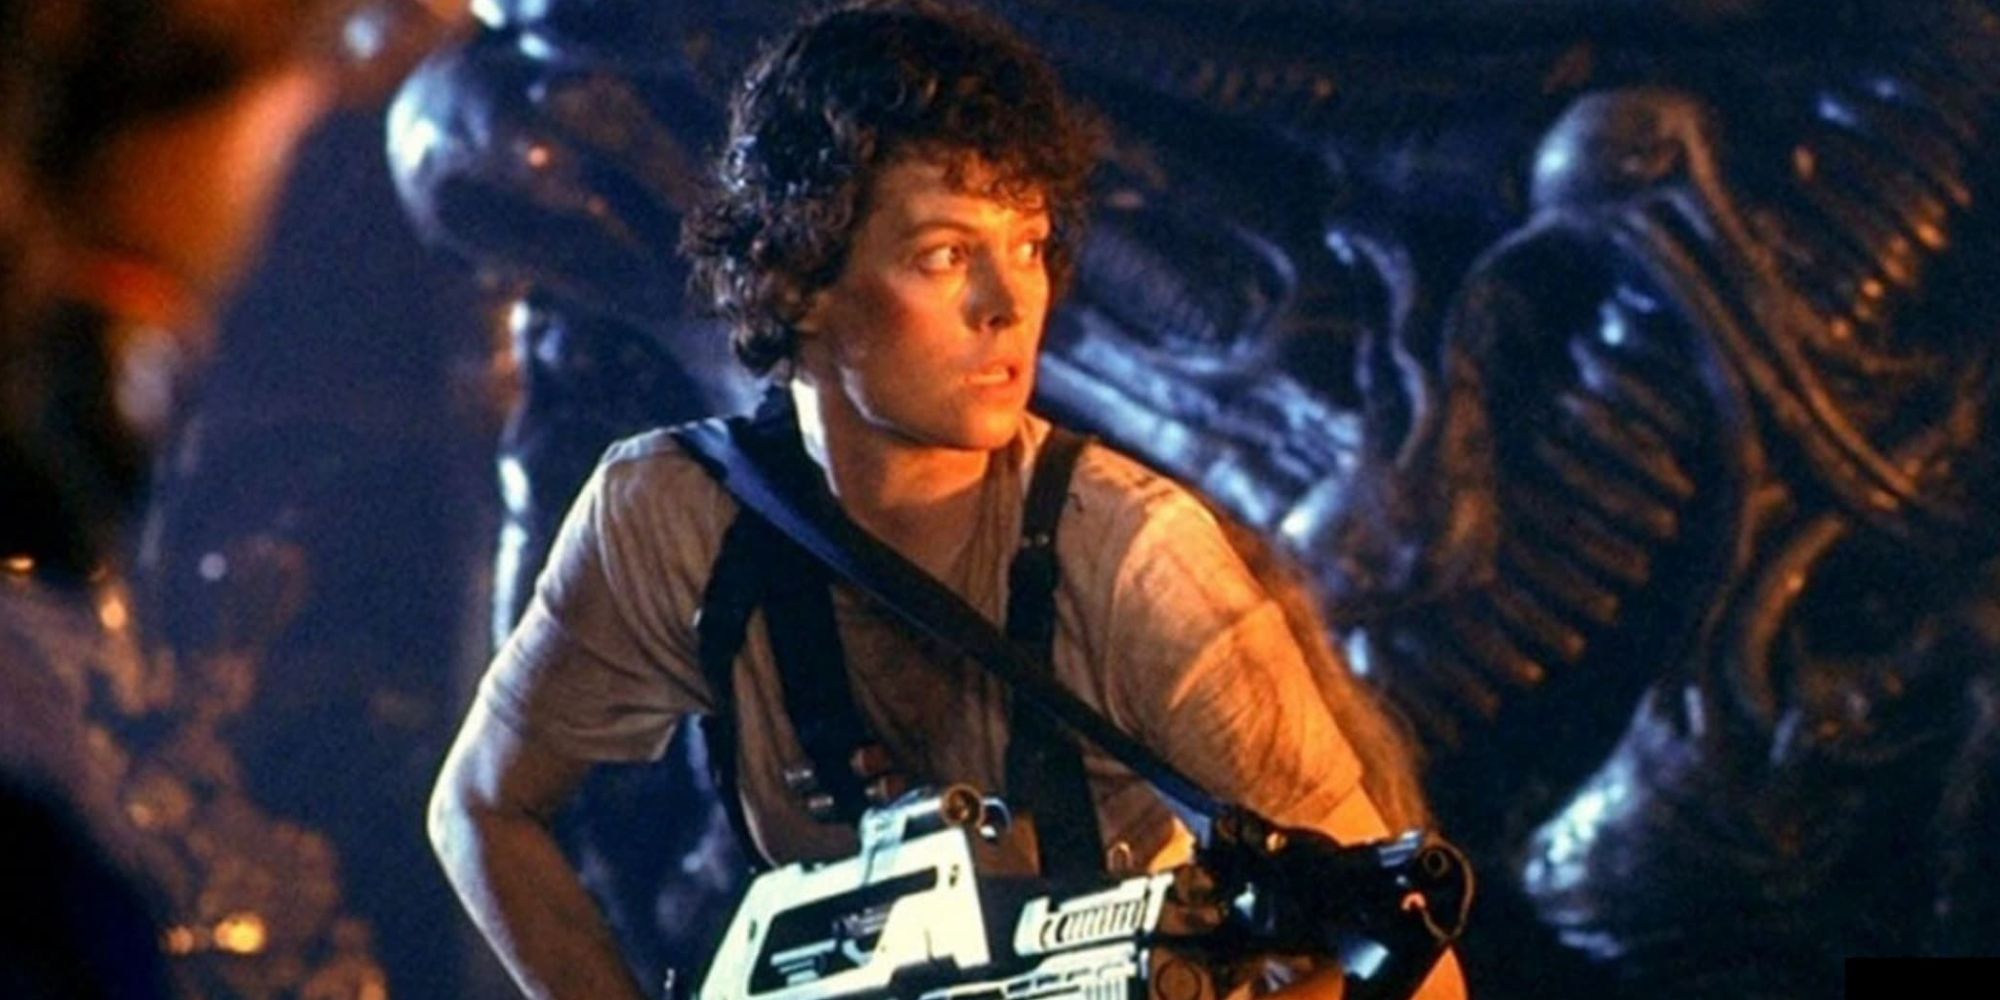 Sigourney Weaver as Ellen Ripley looking at an object offscreen in 'Aliens'